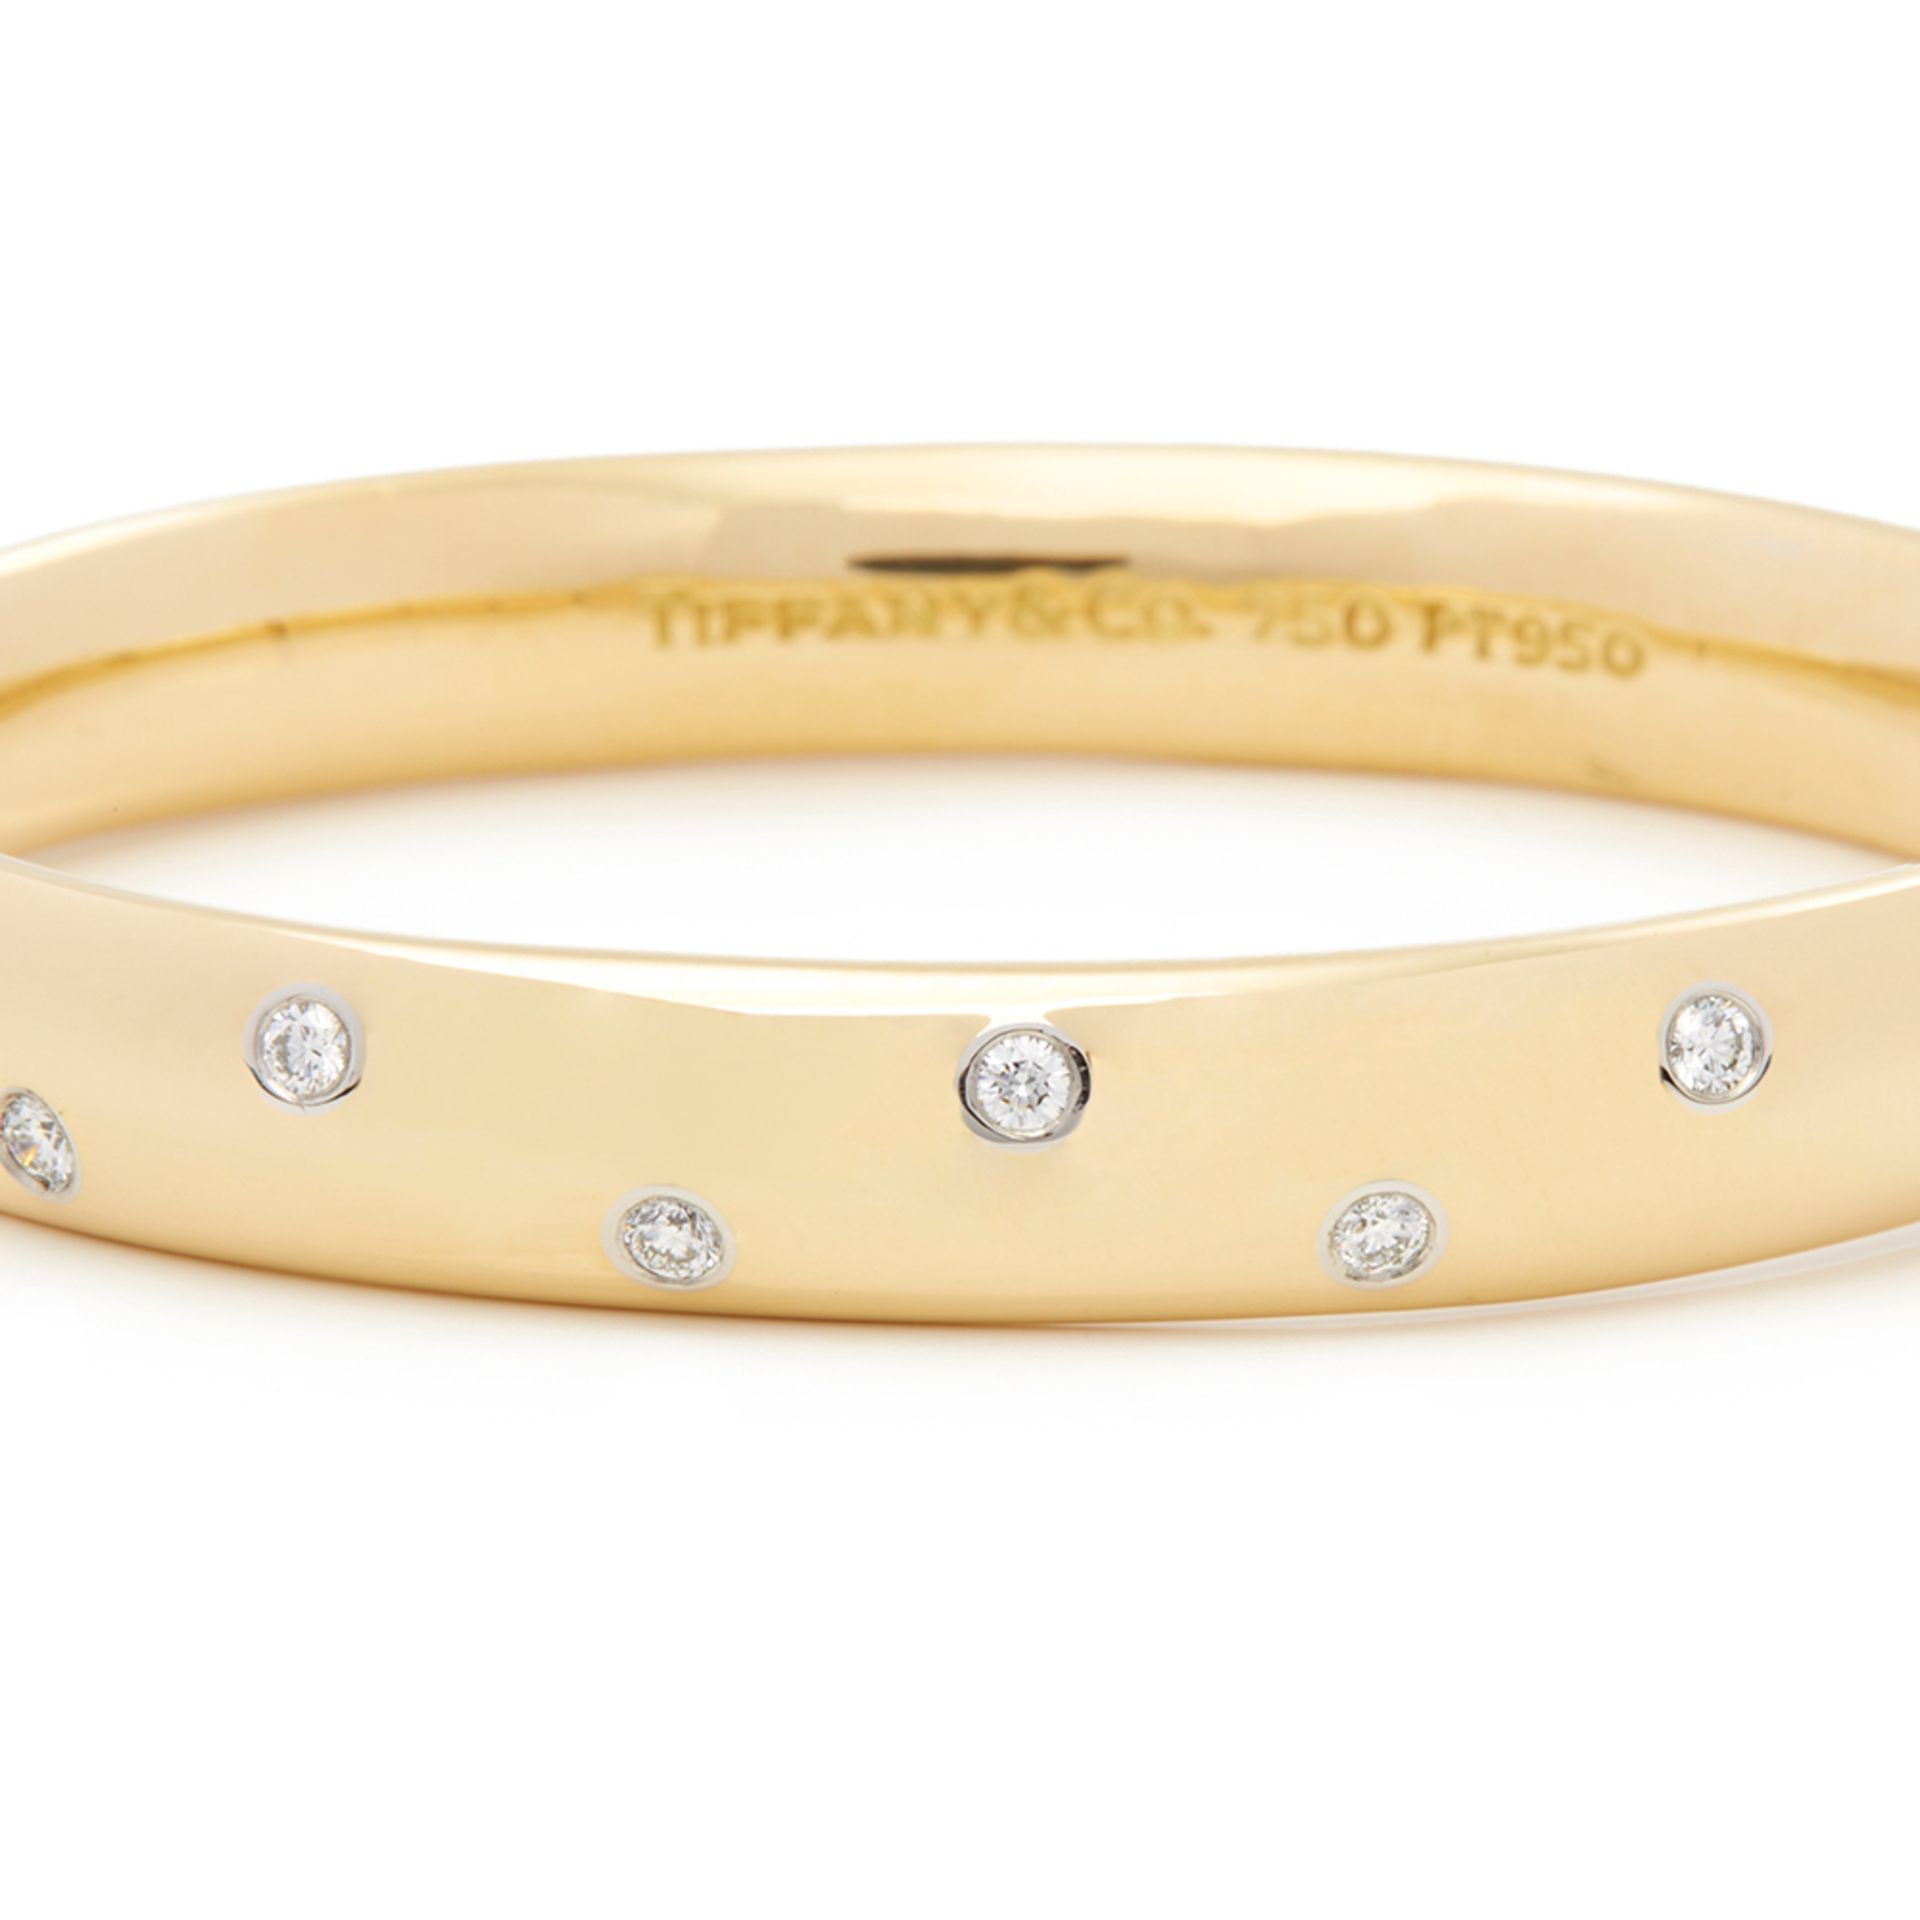 Tiffany & Co. 18k Yellow Gold Diamond Etoile Bracelet - Image 5 of 8